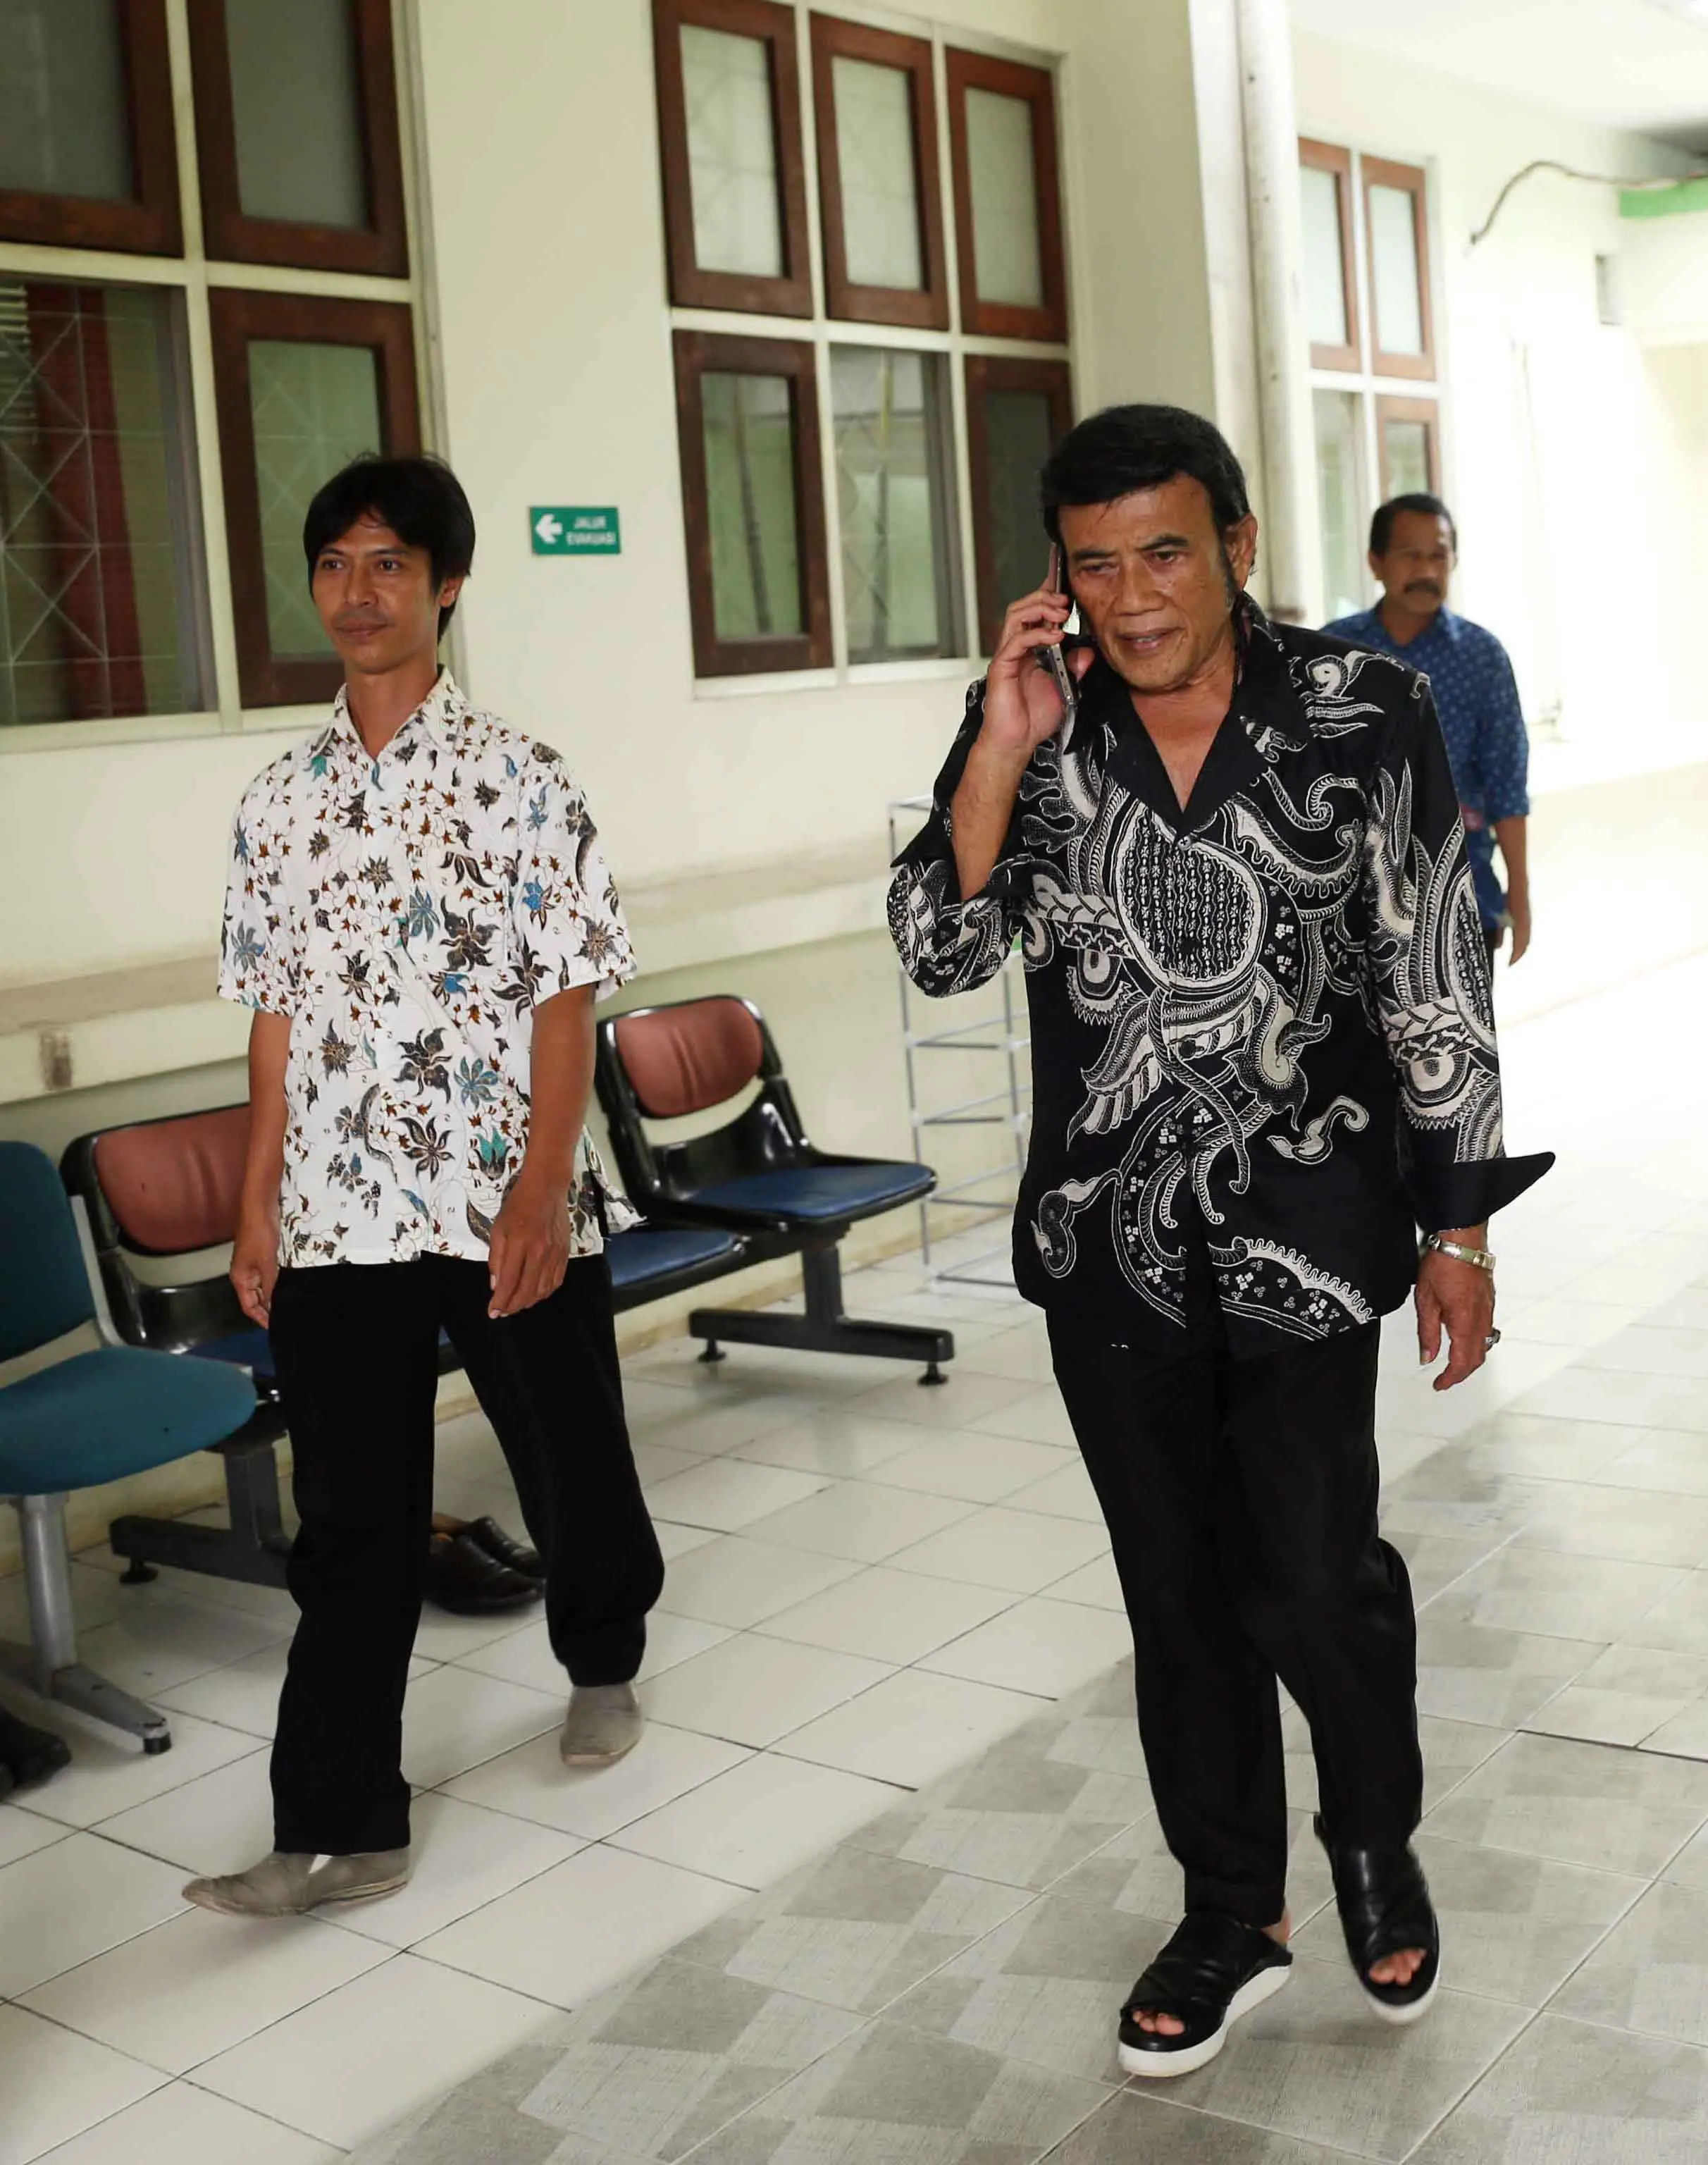 Seperti diketahui, Ridho Rhoma ditangkap Satuan Narkoba Polres Metro Jakarta Barat pada Sabtu (25/3/2017). Kini, putra Rhoma Irama itu sedang menjalani rehabilitasi sambil menunggu berkas perkaranya rampung di pengadilan. (Nurwahyunan/Bintang.com)